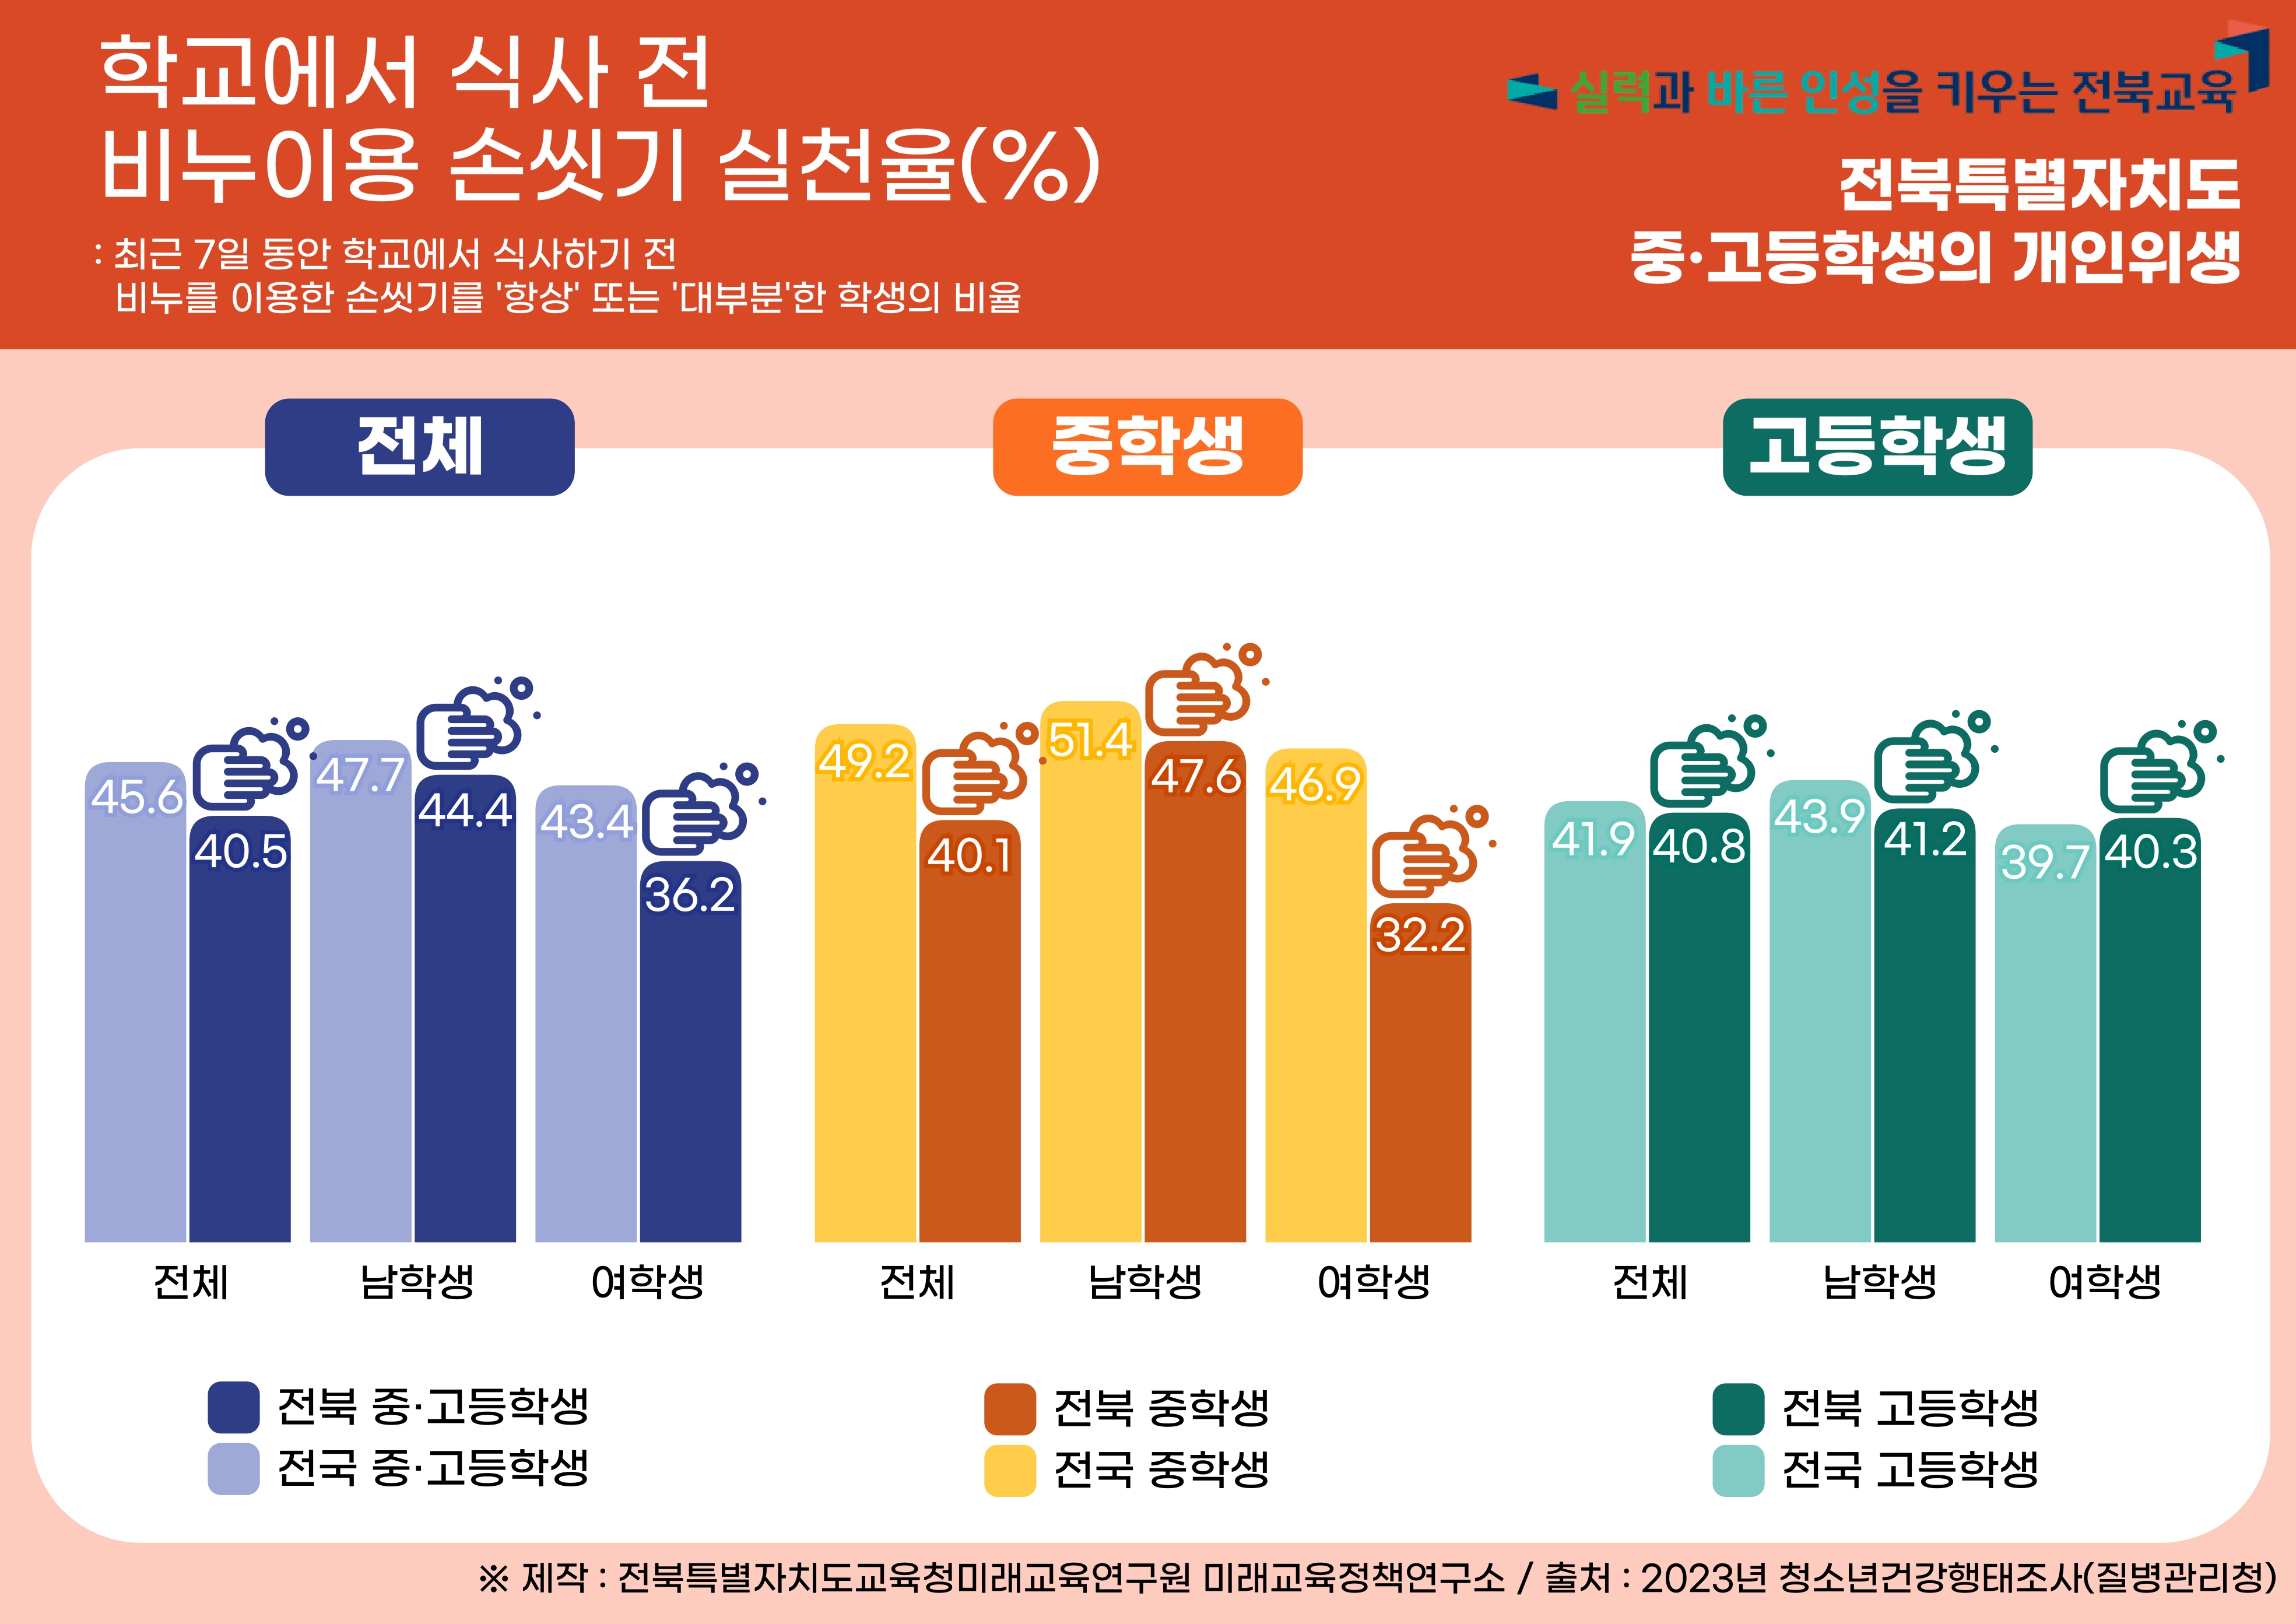 2023년 전북특별자치도 청소년 건강행태 :  개인위생